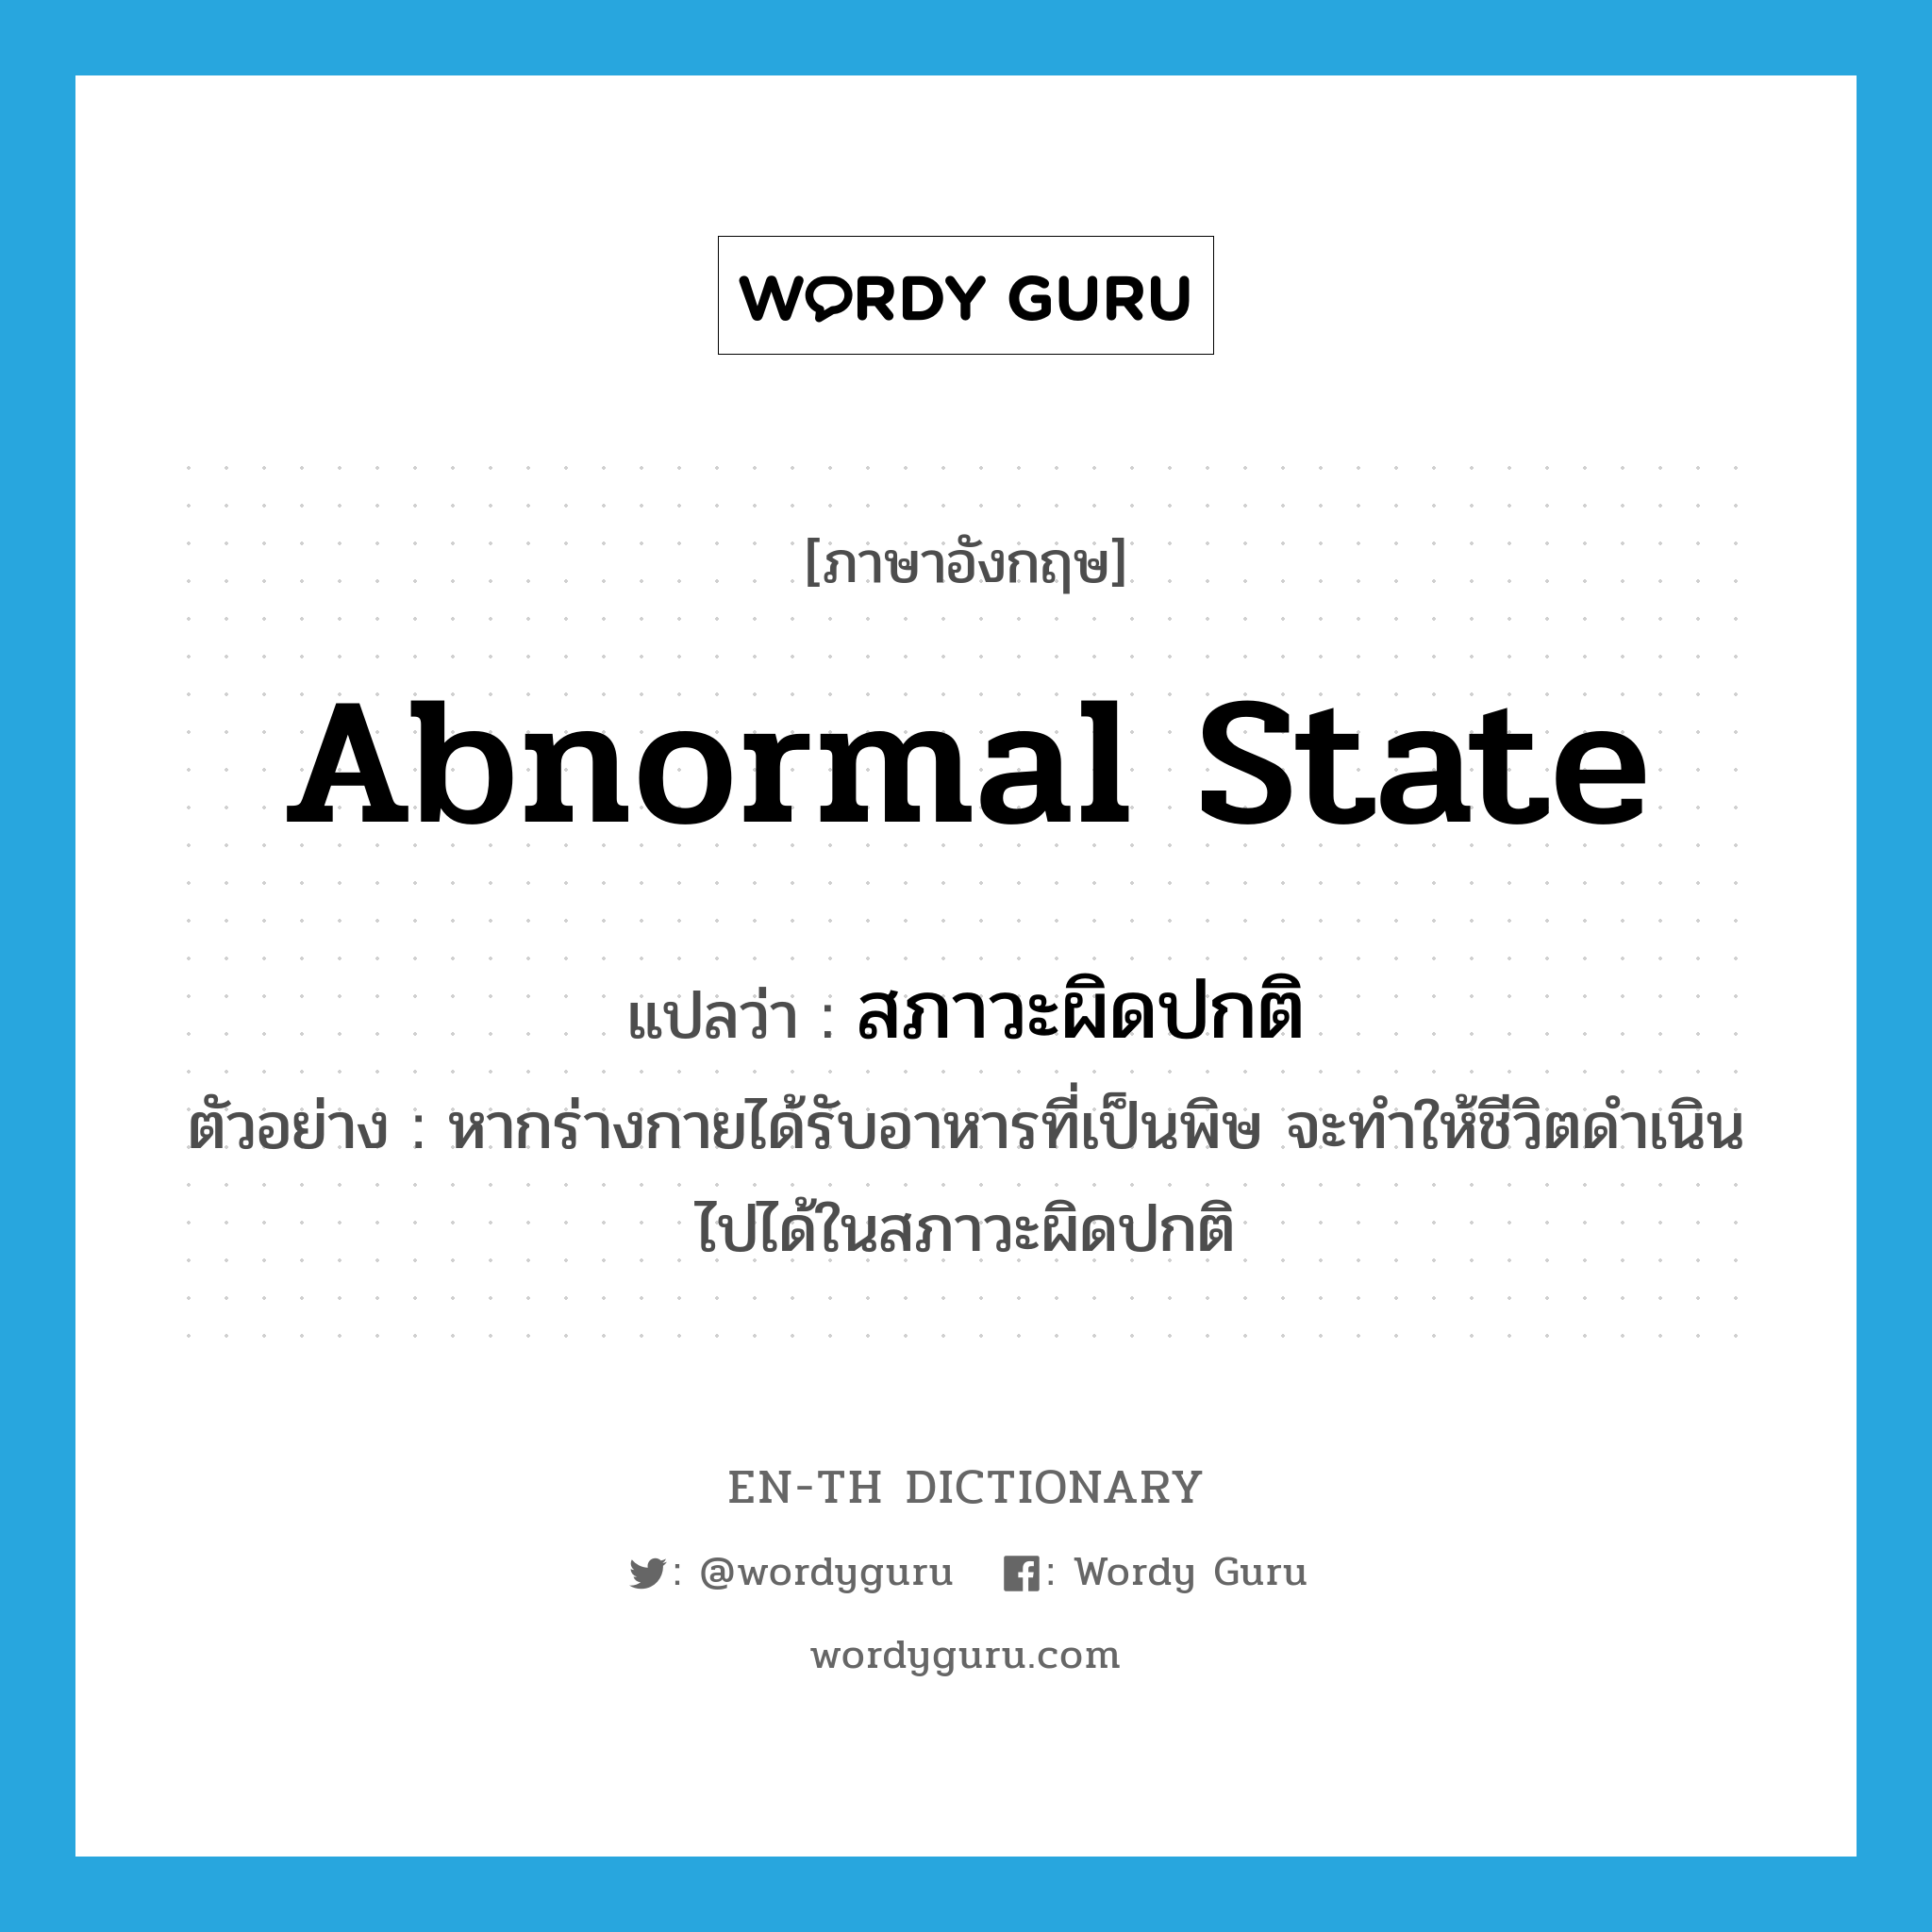 abnormal state แปลว่า?, คำศัพท์ภาษาอังกฤษ abnormal state แปลว่า สภาวะผิดปกติ ประเภท N ตัวอย่าง หากร่างกายได้รับอาหารที่เป็นพิษ จะทำให้ชีวิตดำเนินไปได้ในสภาวะผิดปกติ หมวด N